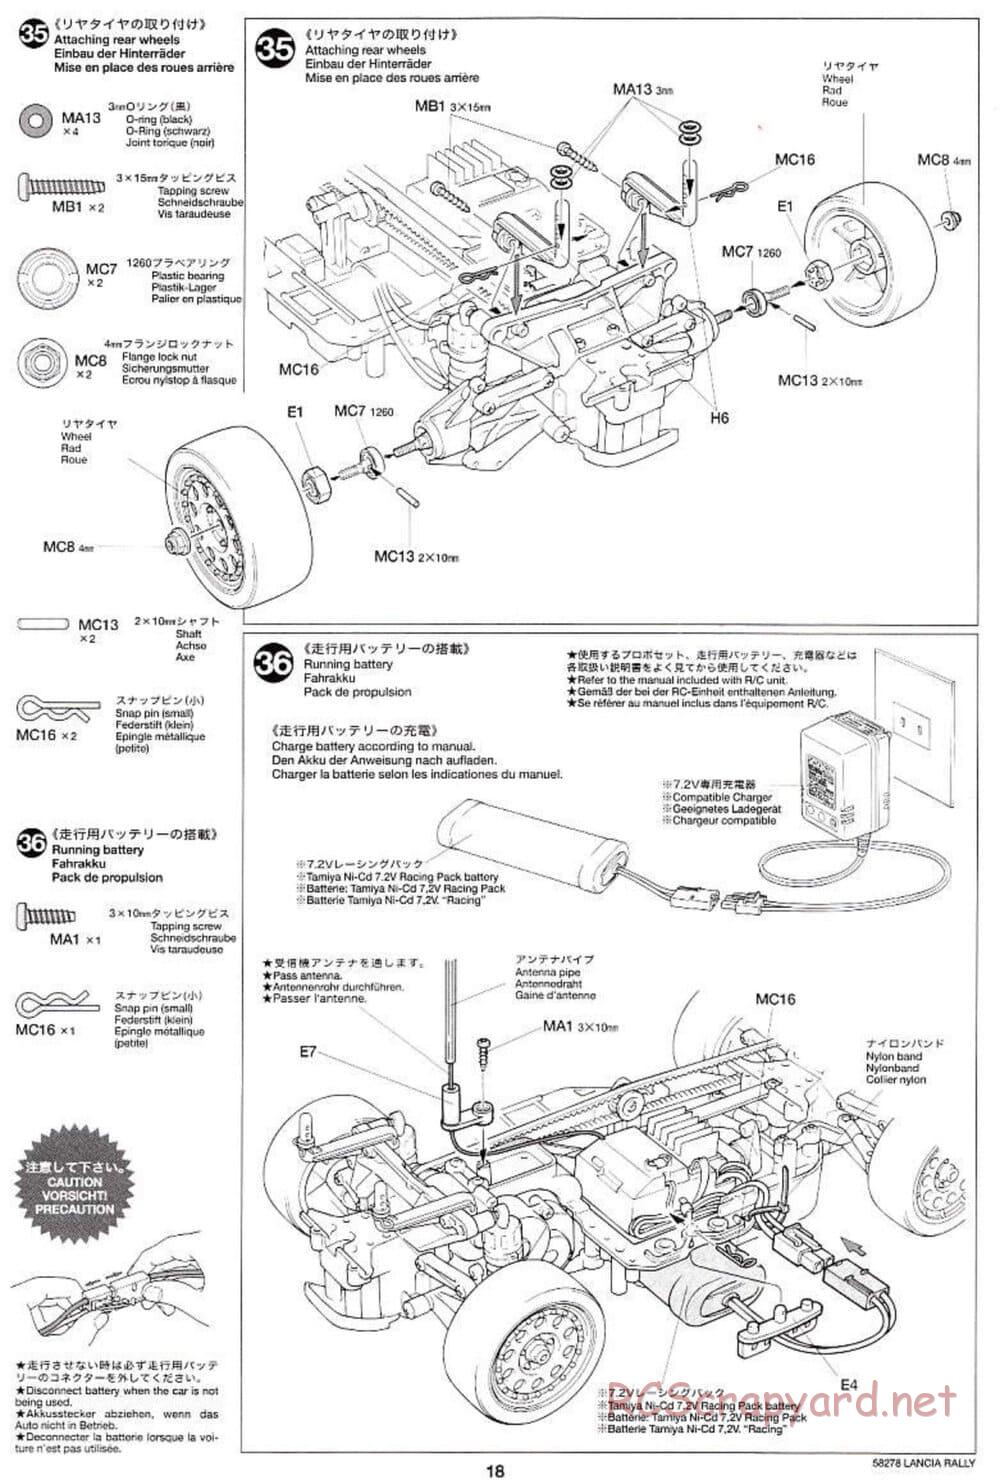 Tamiya - Lancia 037 Rally - TA-03RS Chassis - Manual - Page 18